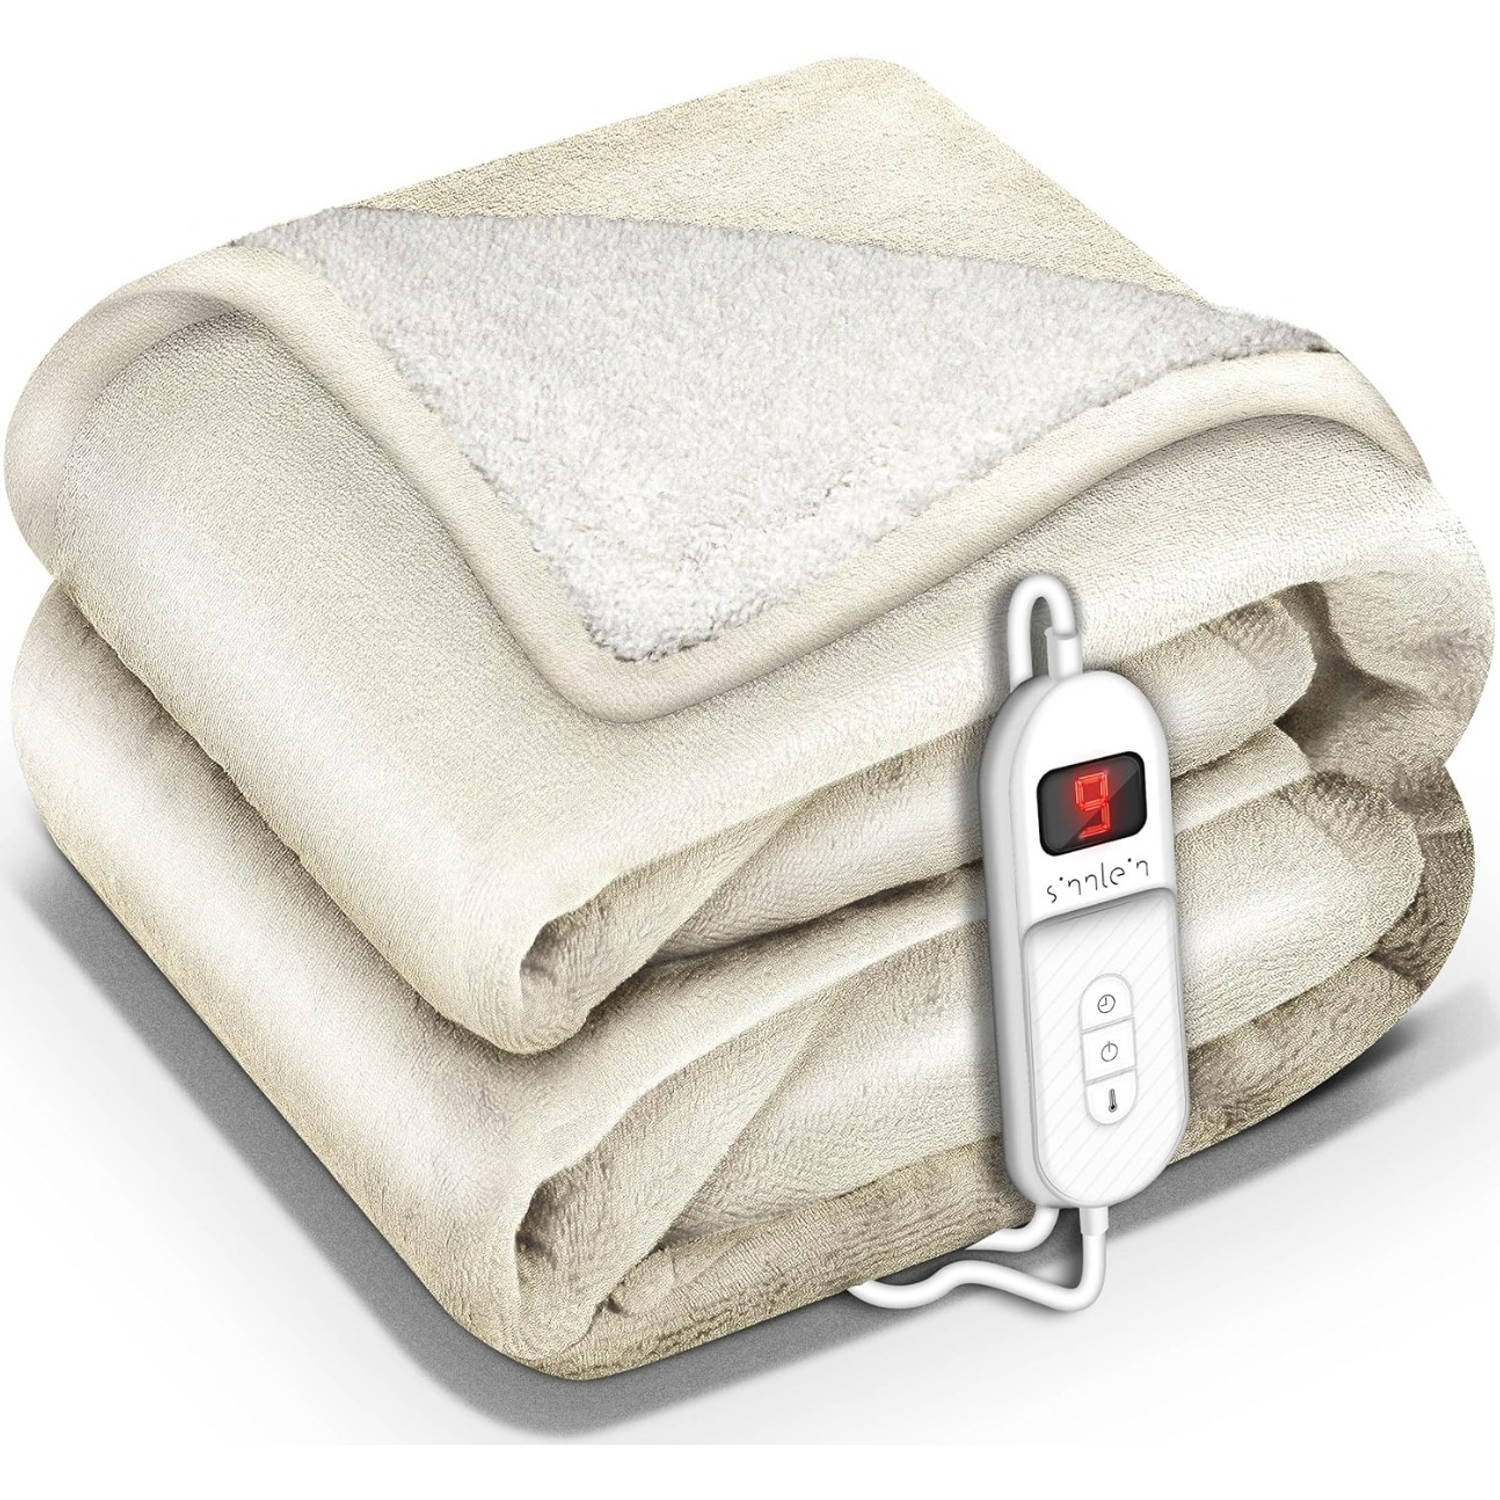 Sinnlein- Elektrische deken met automatische uitschakeling, beige, 160x120 cm, warmtedeken met 9 tem